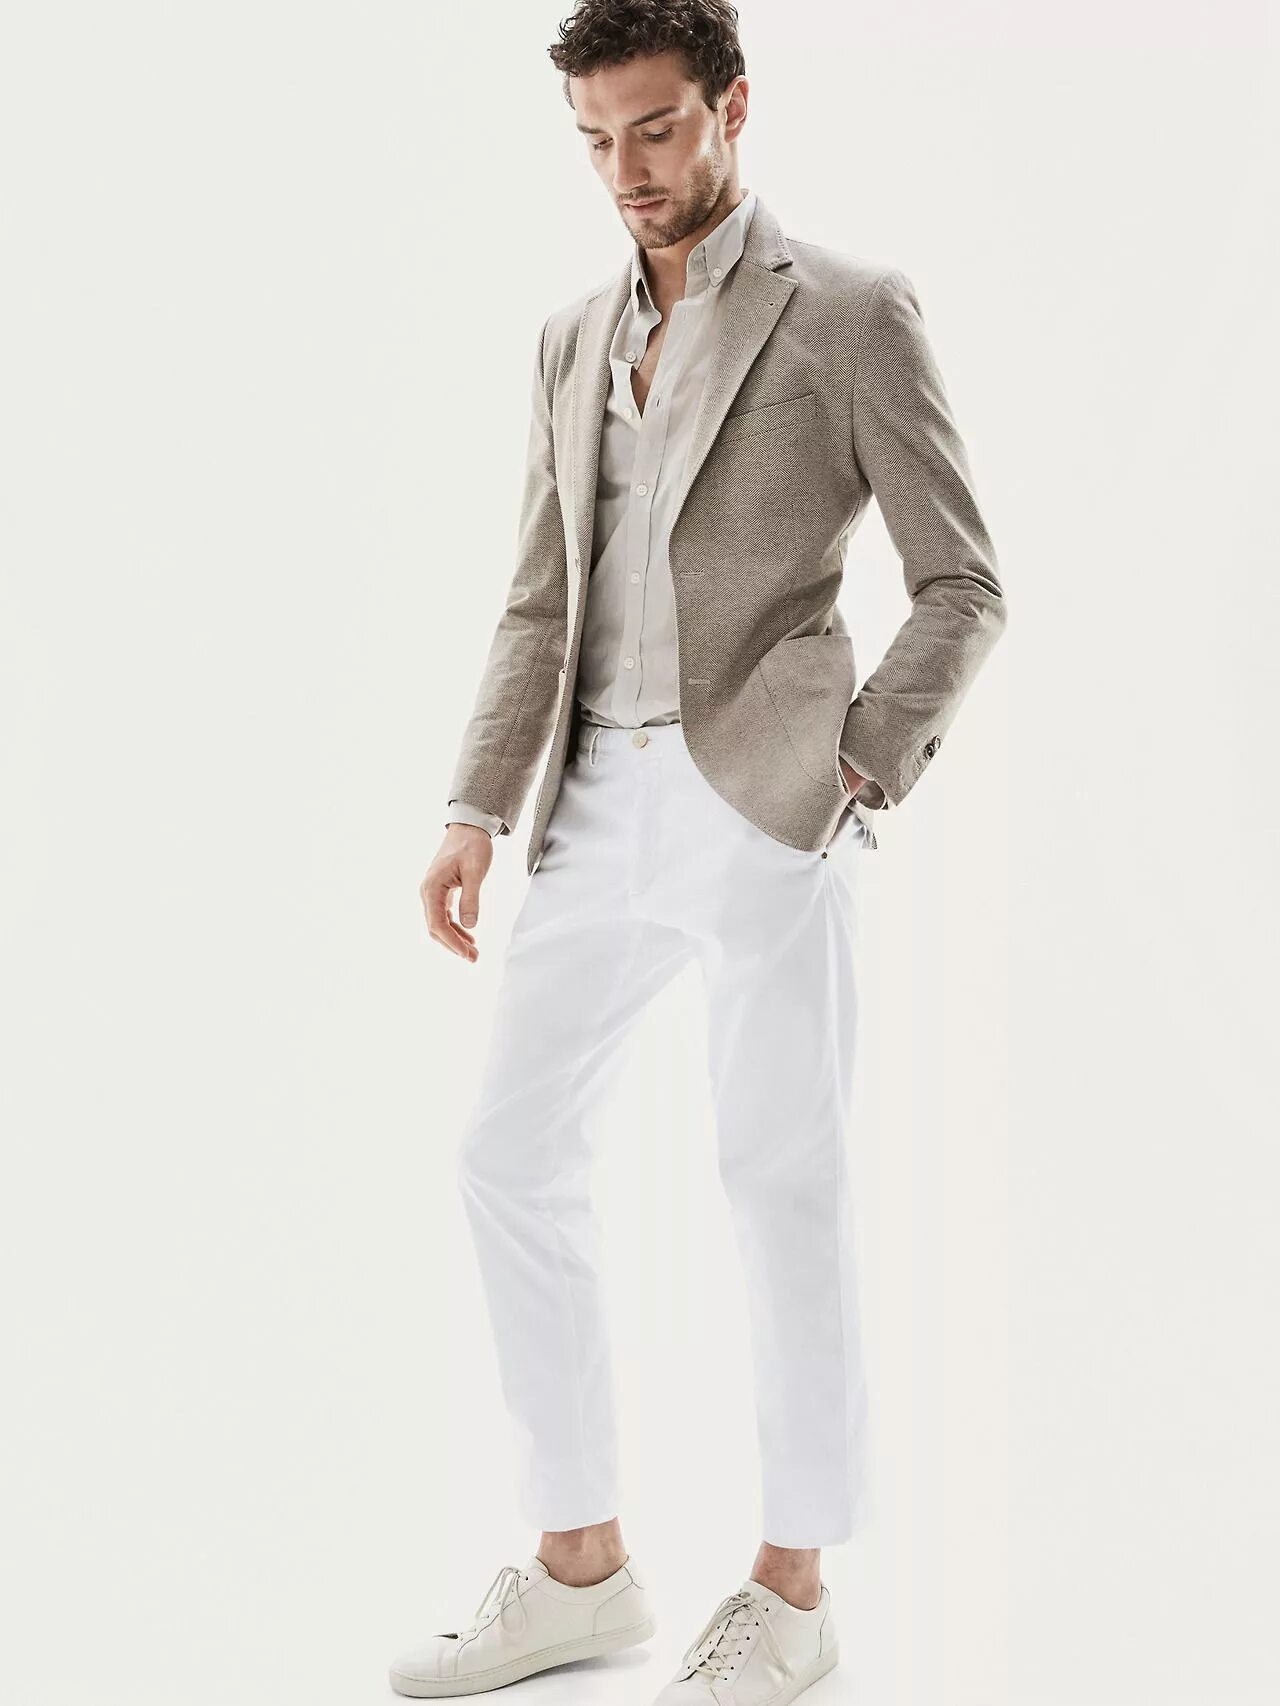 Бежевые брюки с пиджаком мужские. Мужской пиджак для бежевых штанов. Белый пиджак мужской. Бежевые брюки мужские.